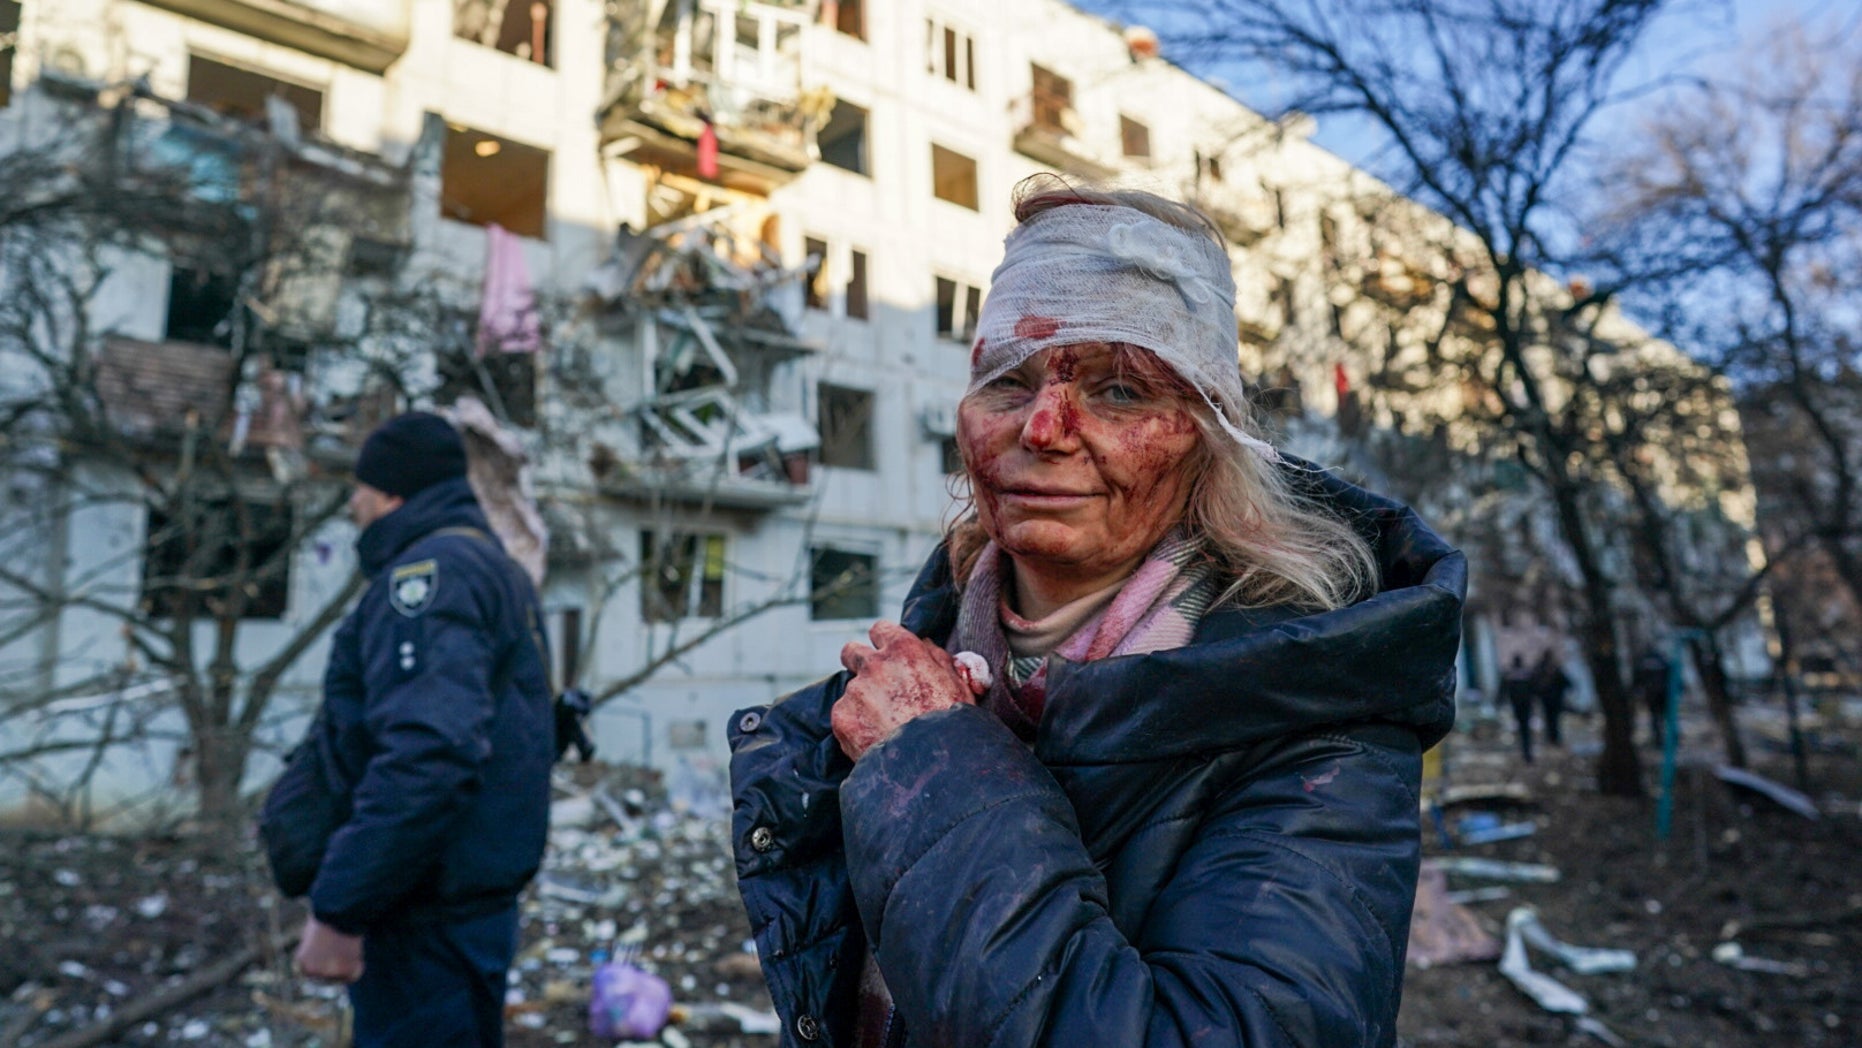 Một phụ nữ bị thương sau cuộc không kích tại một khu chung cư ở thành phố Chuhuiv, tỉnh Kharkiv, Ukraine vào ngày 24/2. (Ảnh: Wolfgang Schwan/Getty Images)